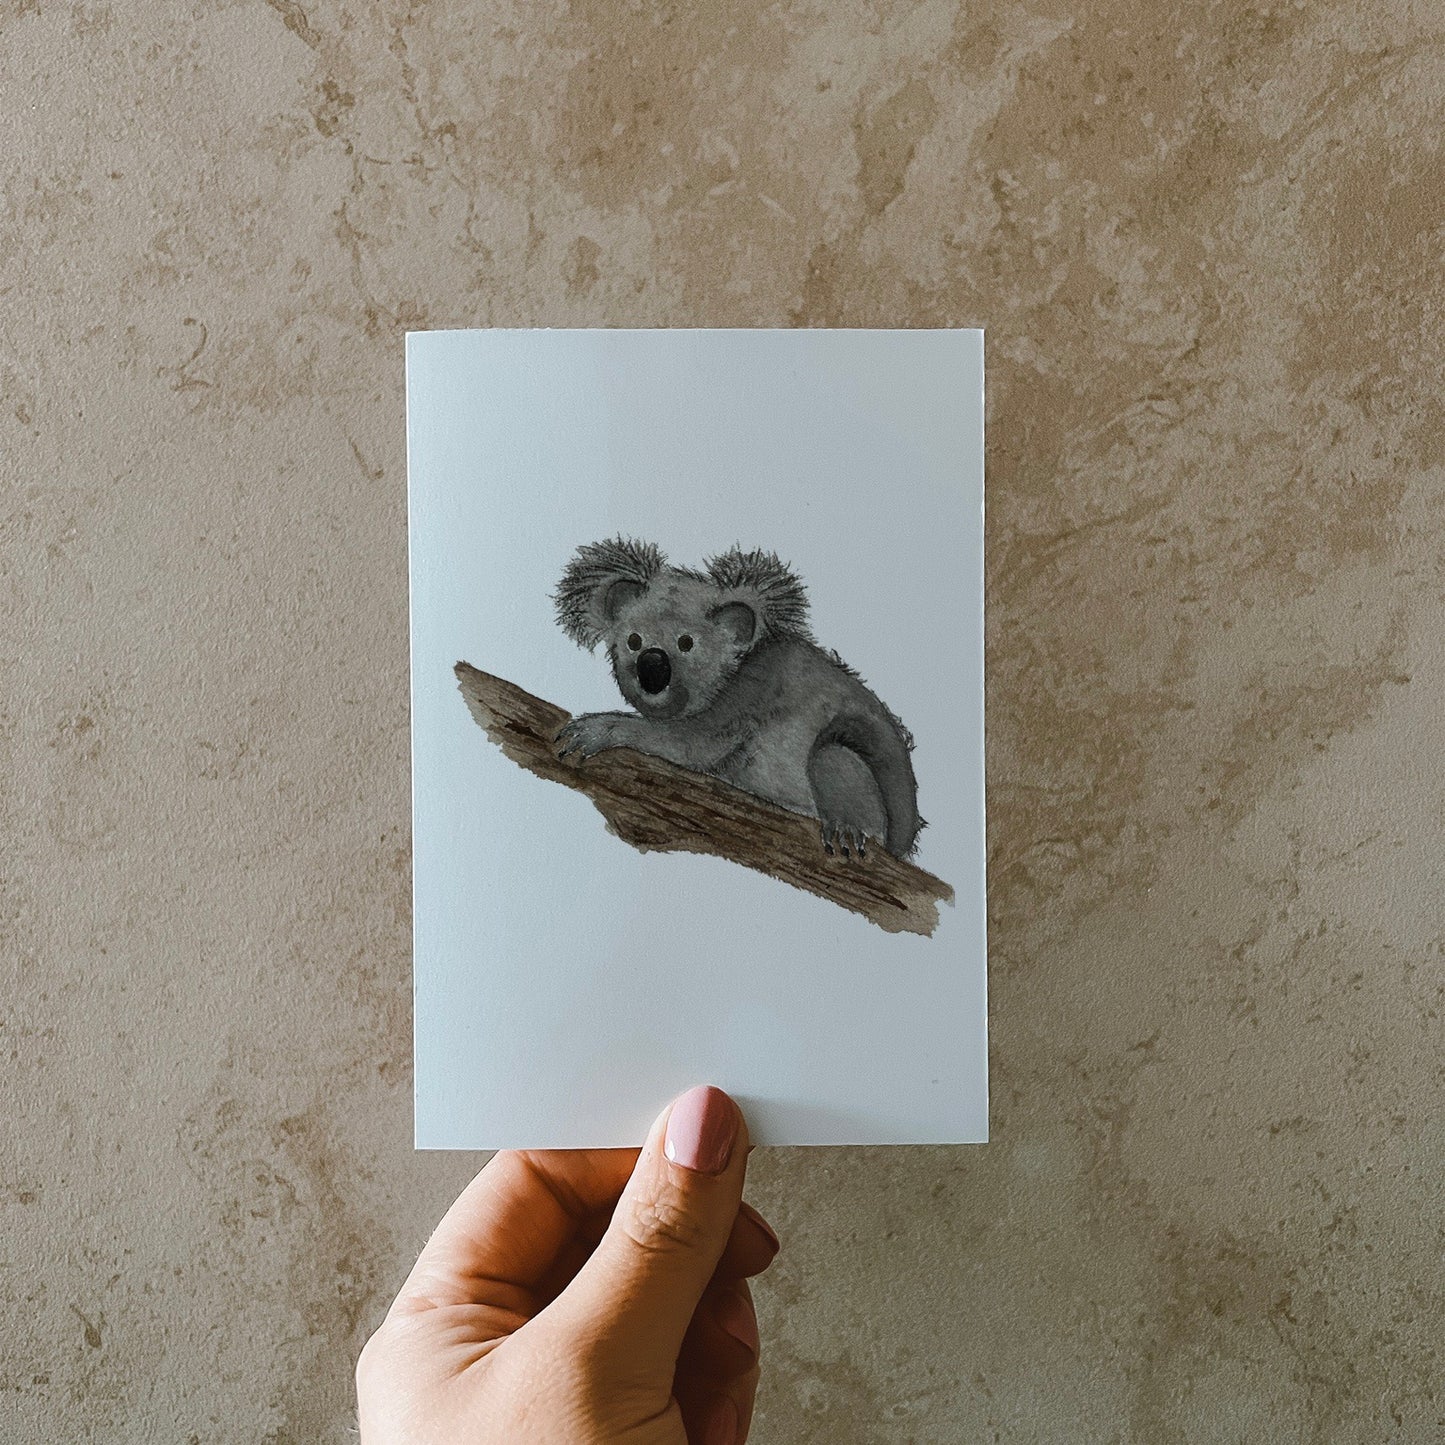 Postkarte DIN A6, Hochformat, gedruckt in Deutschland. Auf dieser Karte befindet sich ein junger Koala, welcher sich gemütlich einen Baumstamm klammert.